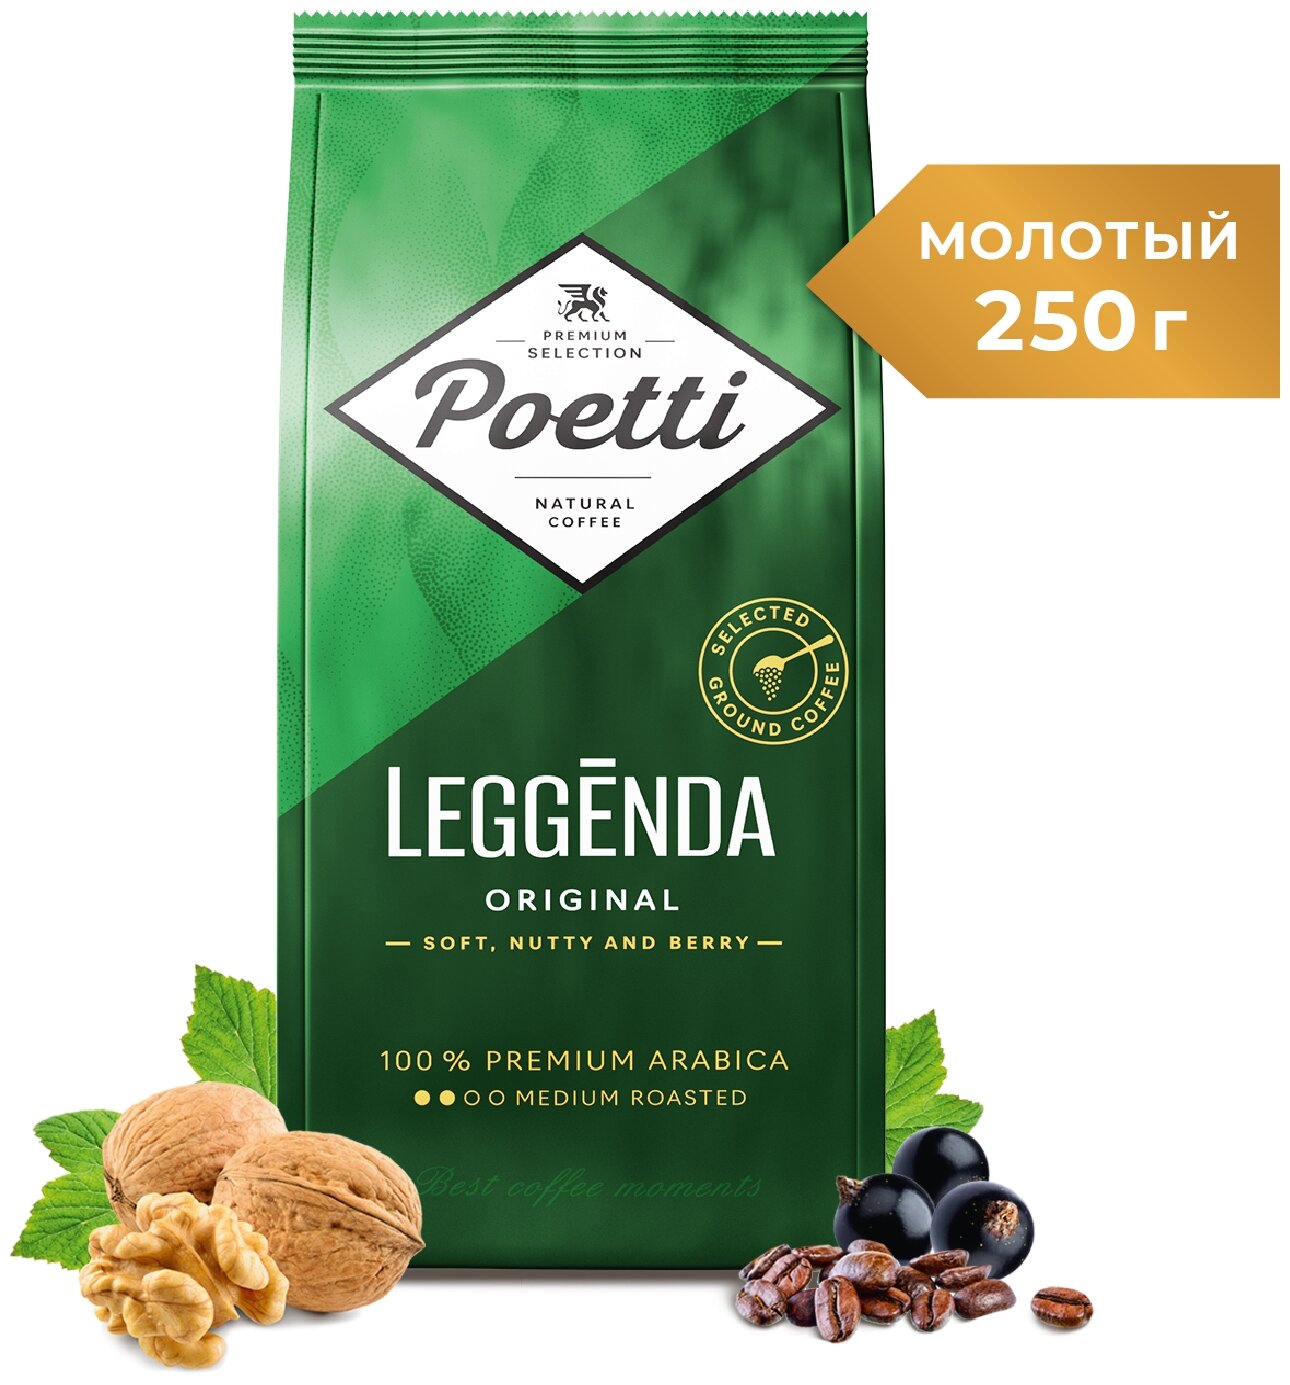 Кофе молотый Poetti Leggenda Original, 250 г, металлизированный пакет